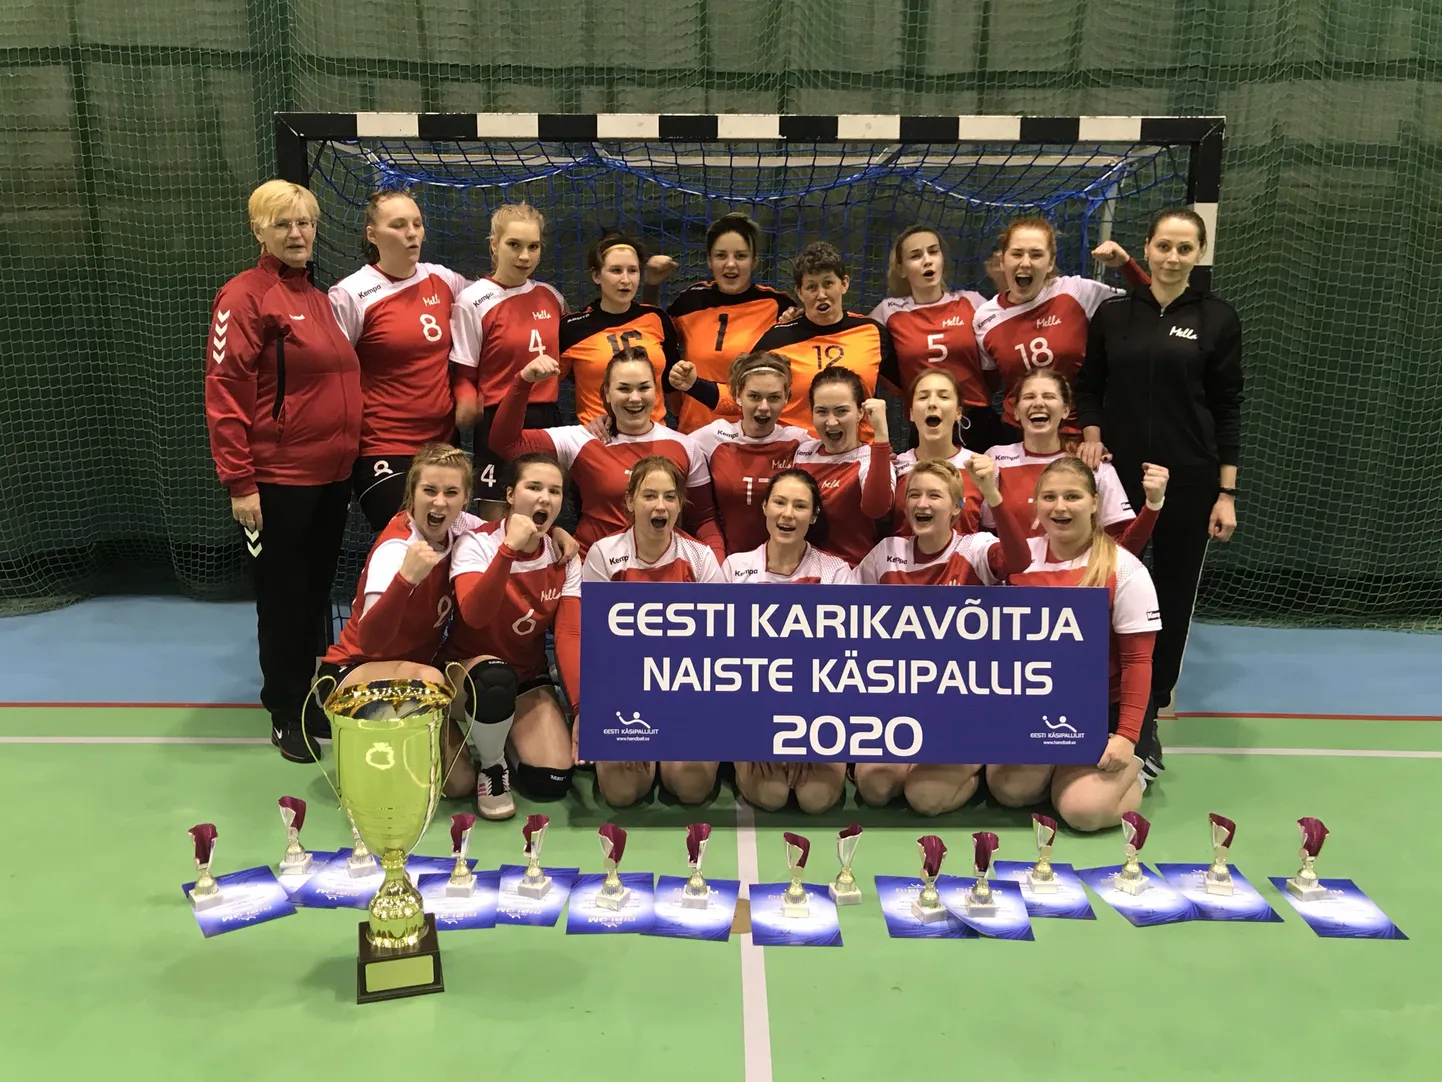 Eesti karikavõitja naiste käsipallis 2020 Reval/Sport/Mella.